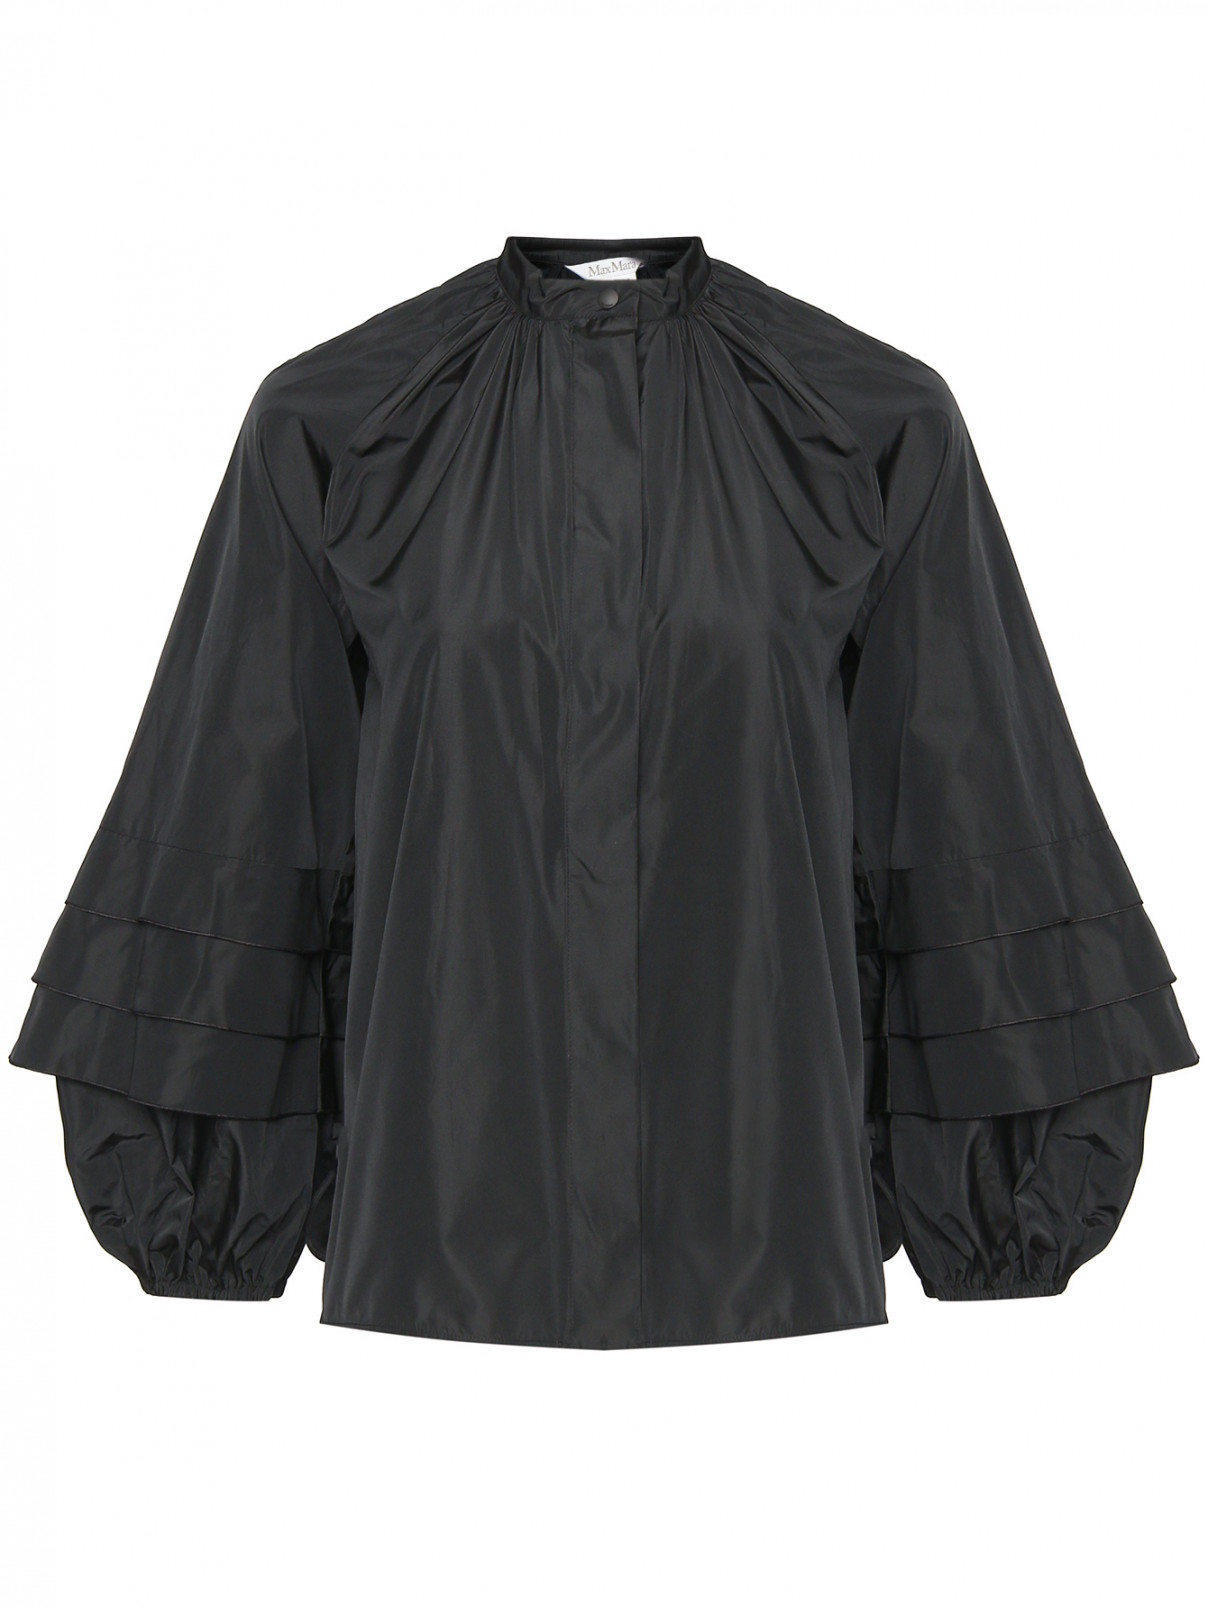 Блуза с объемными рукавами Max Mara  –  Общий вид  – Цвет:  Черный